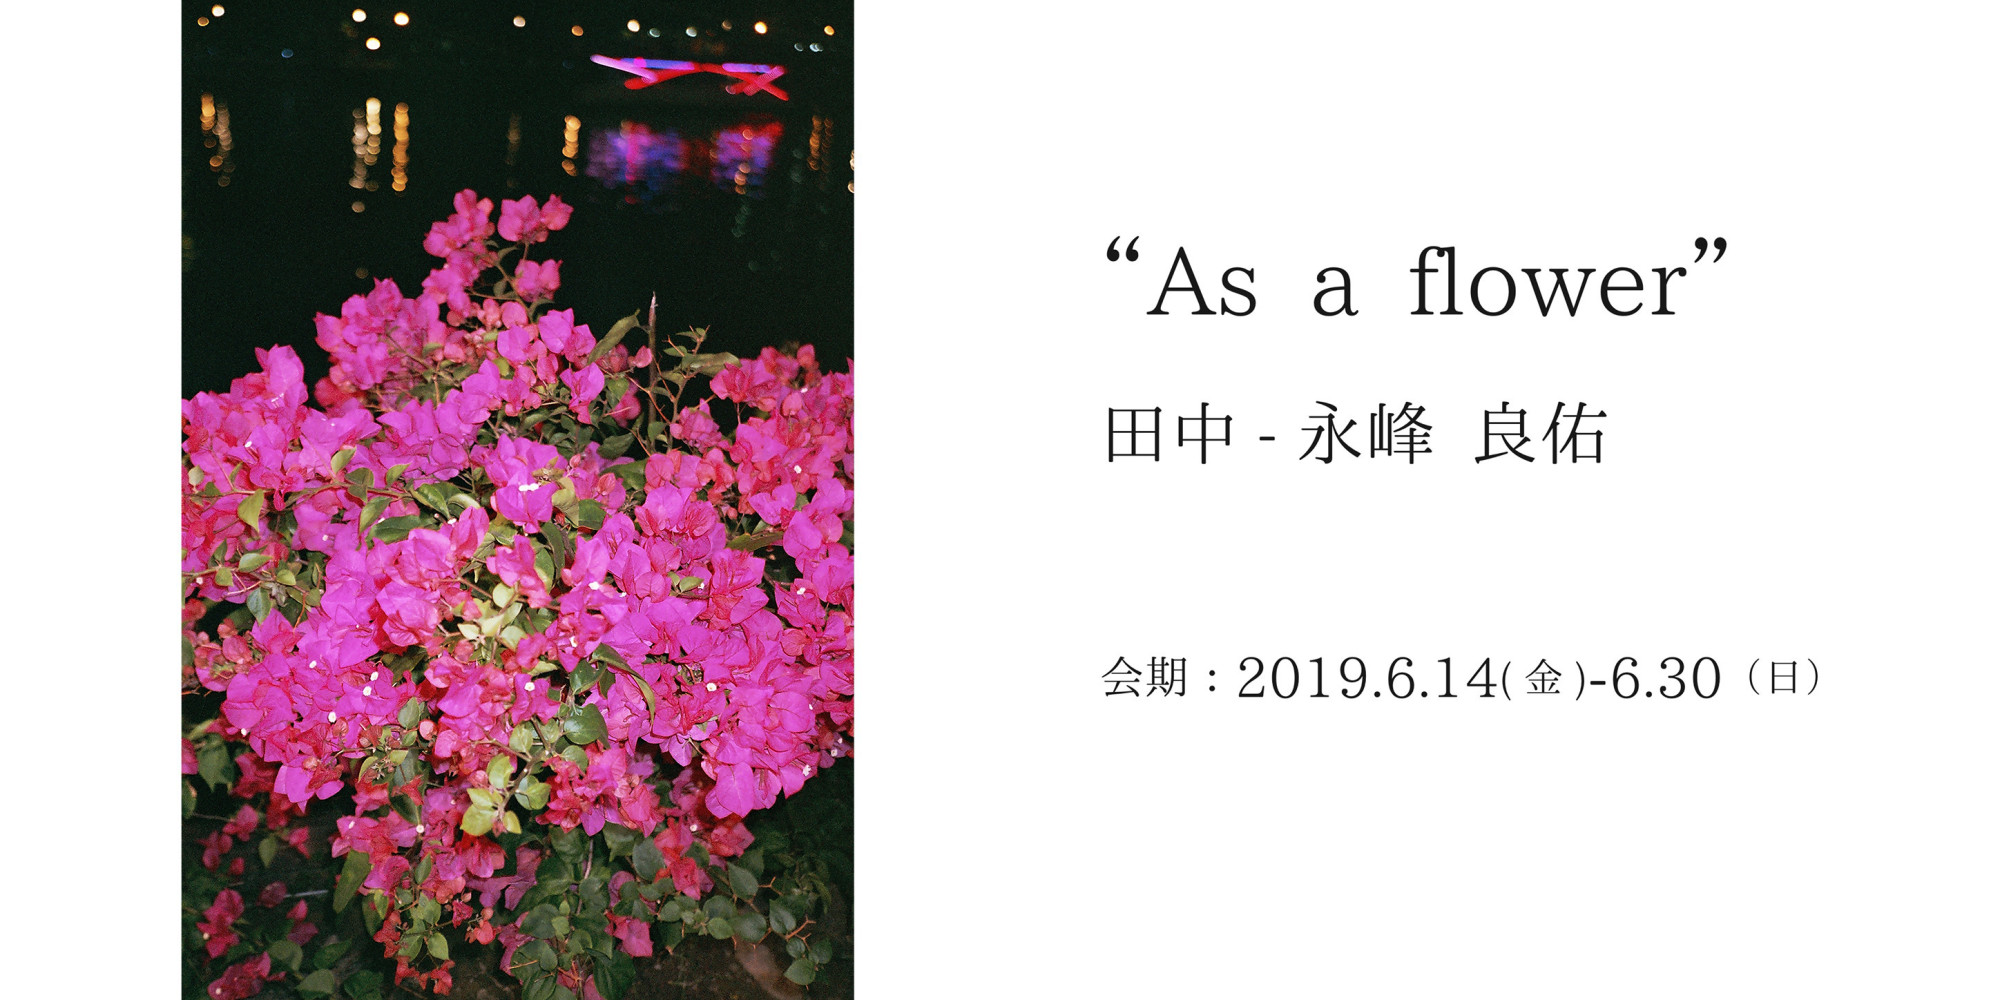 田中-永峰 良佑個展「As a flower」